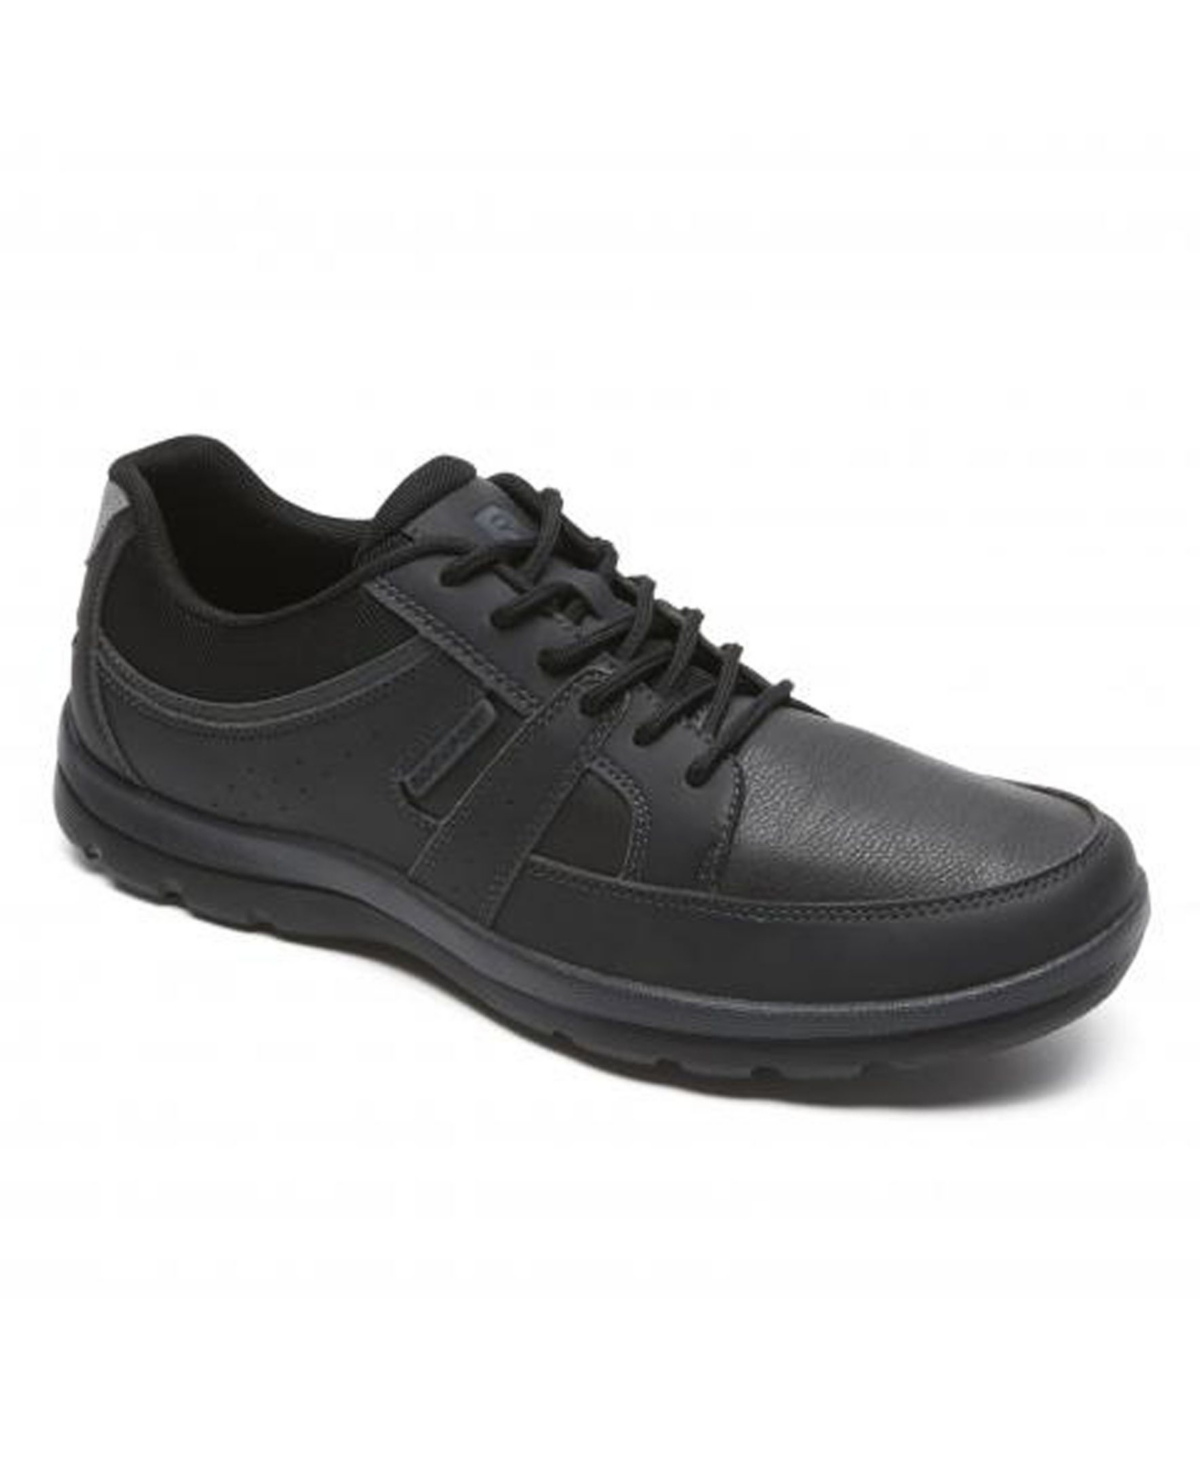 Rockport Men's Get Your Kicks Blucher Shoes In Black